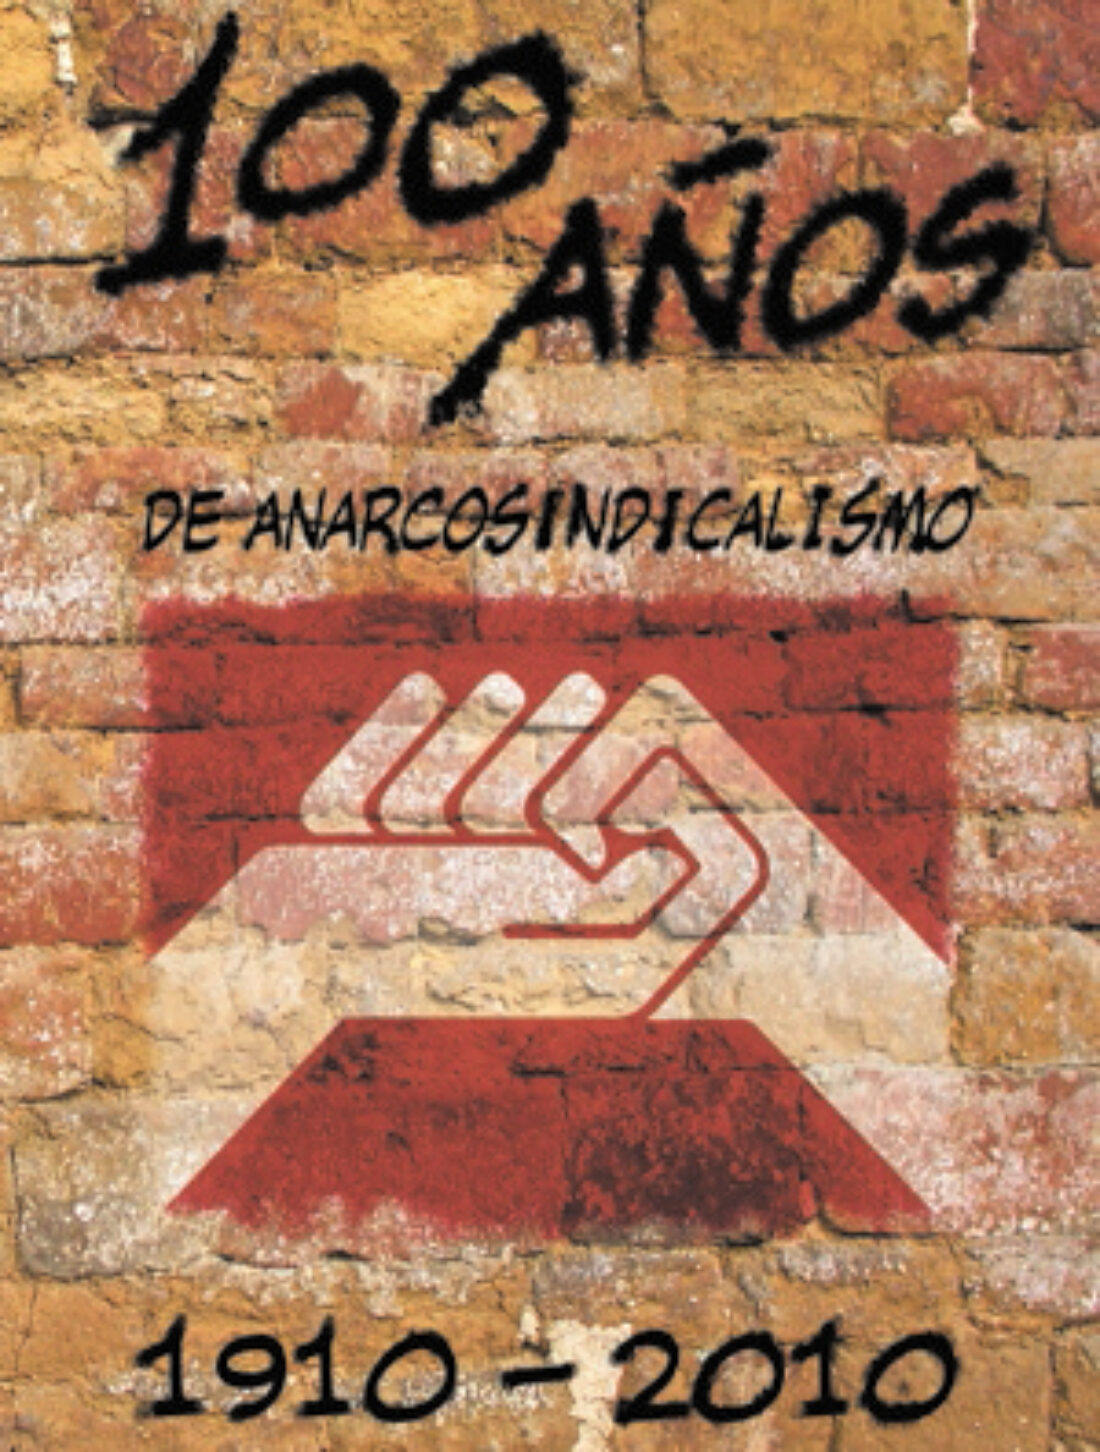 El 15 de febrero cierra la exposición 100 años del Anarcosindicalismo en Barcelona